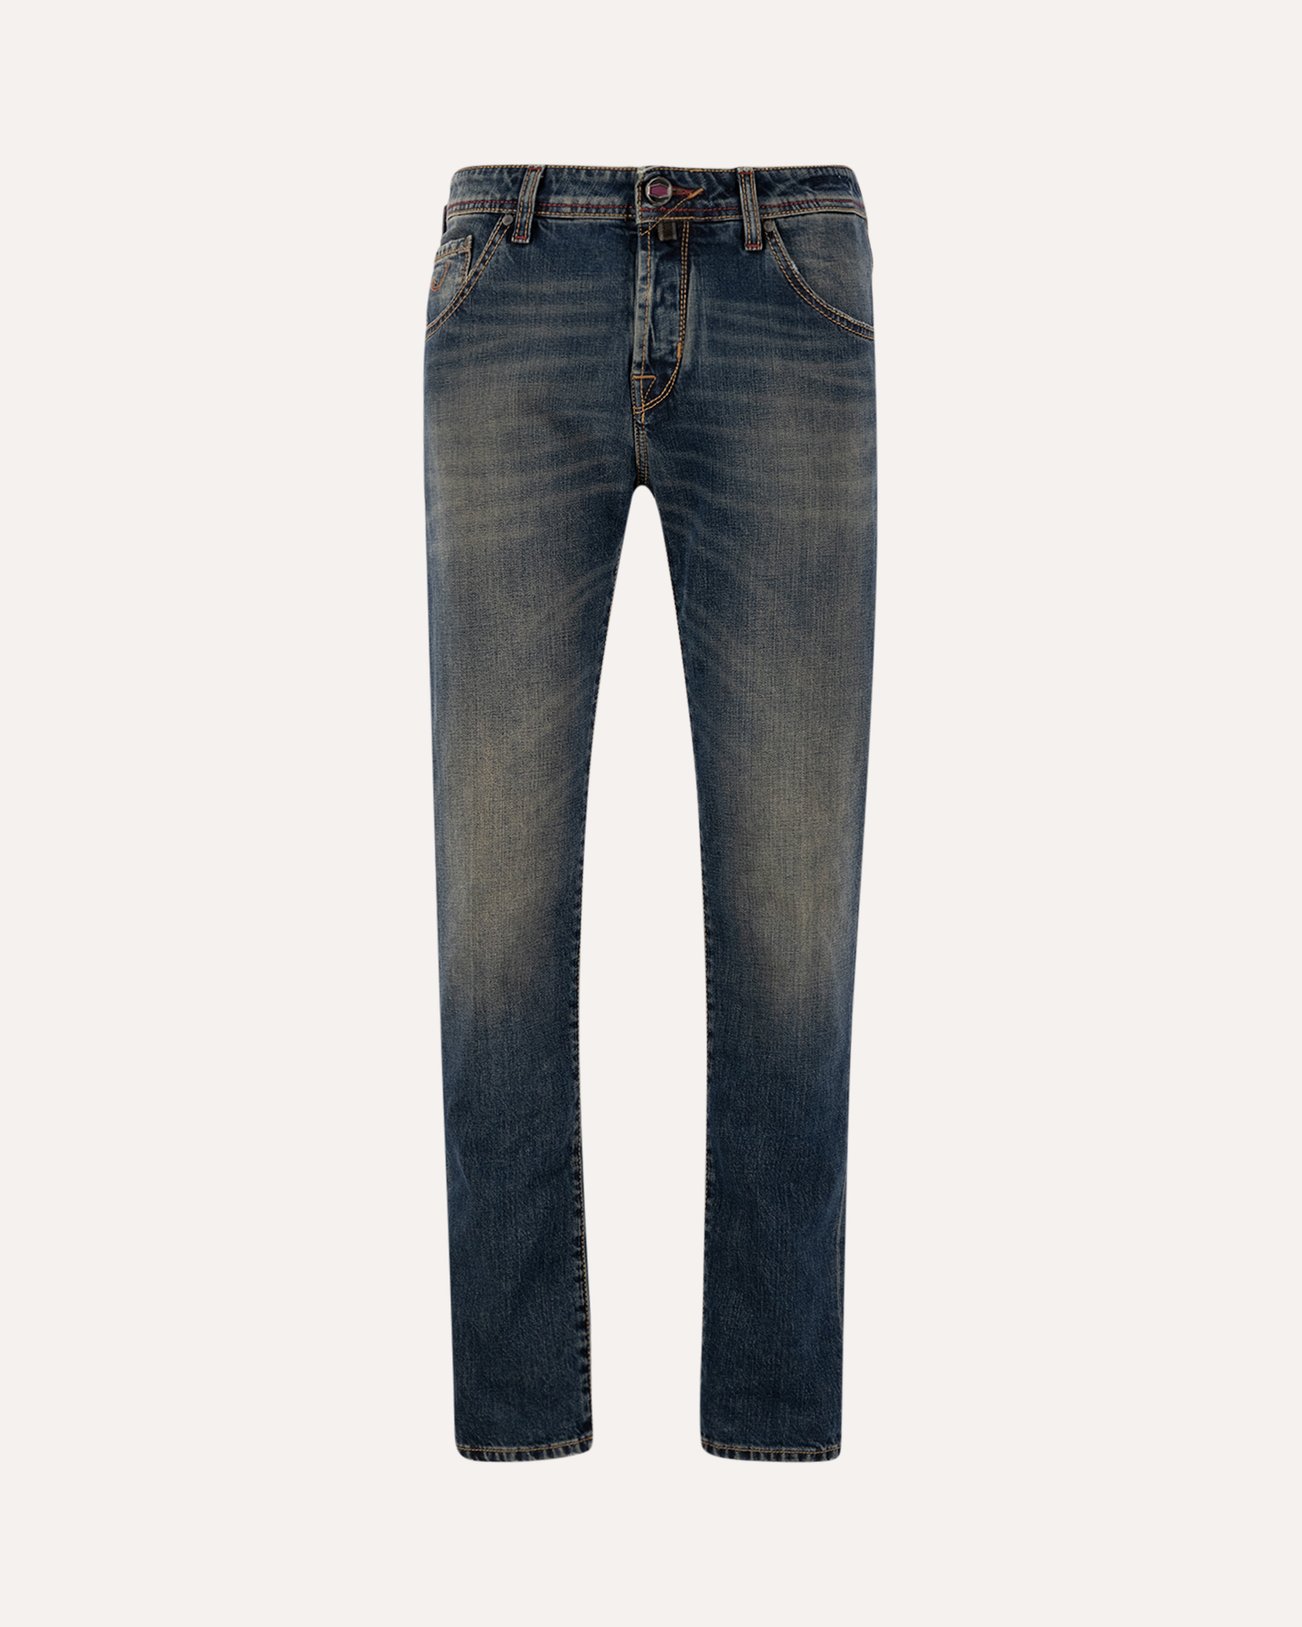 Jacob Cohen Scott Light-Blue Cropped Carrot-Fit Jeans 624D DENIM 1